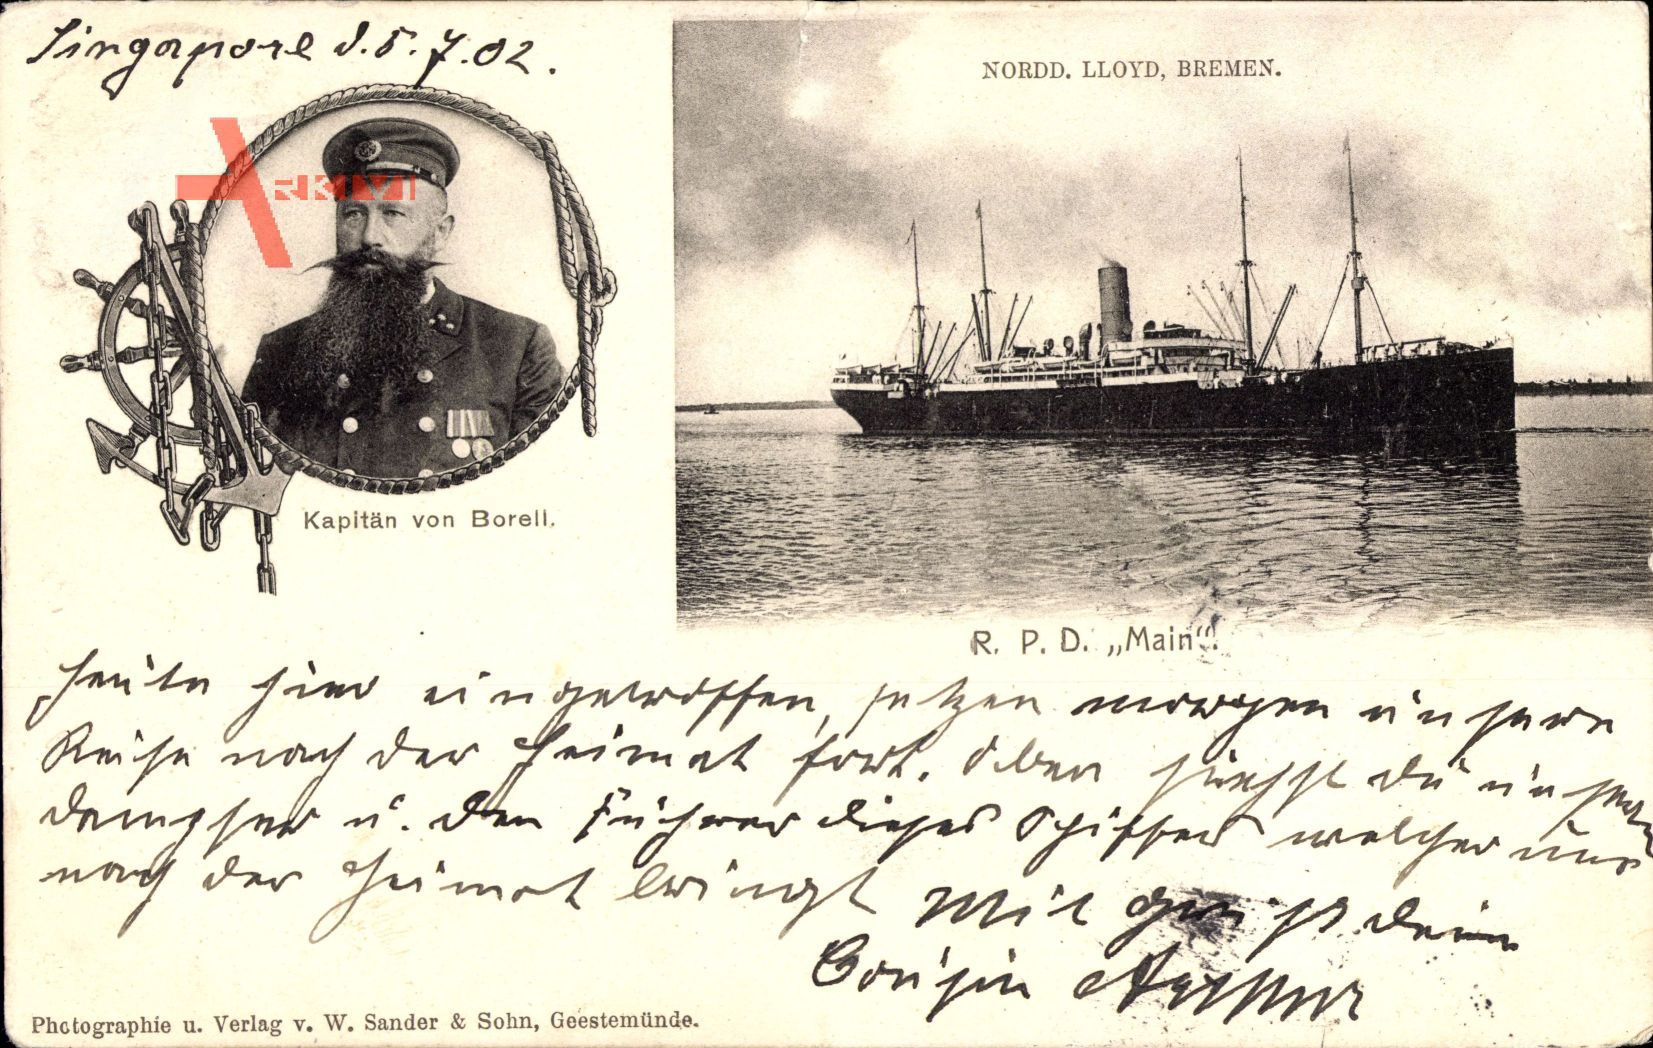 Singapur Asien, Schiff R.P.D. Main, Kapitän von Borell